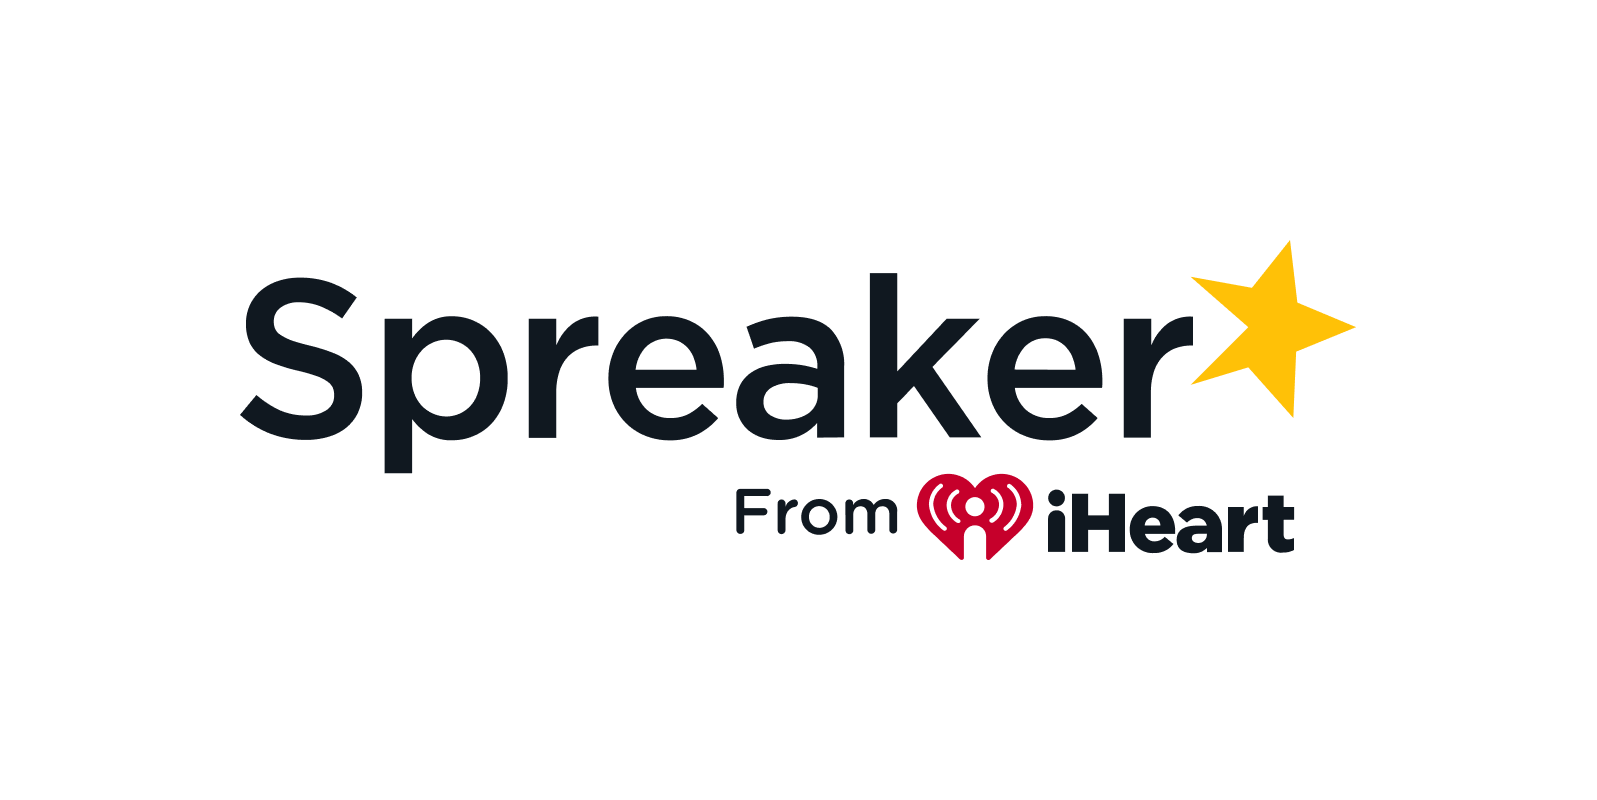 Speaker from iHeart logo